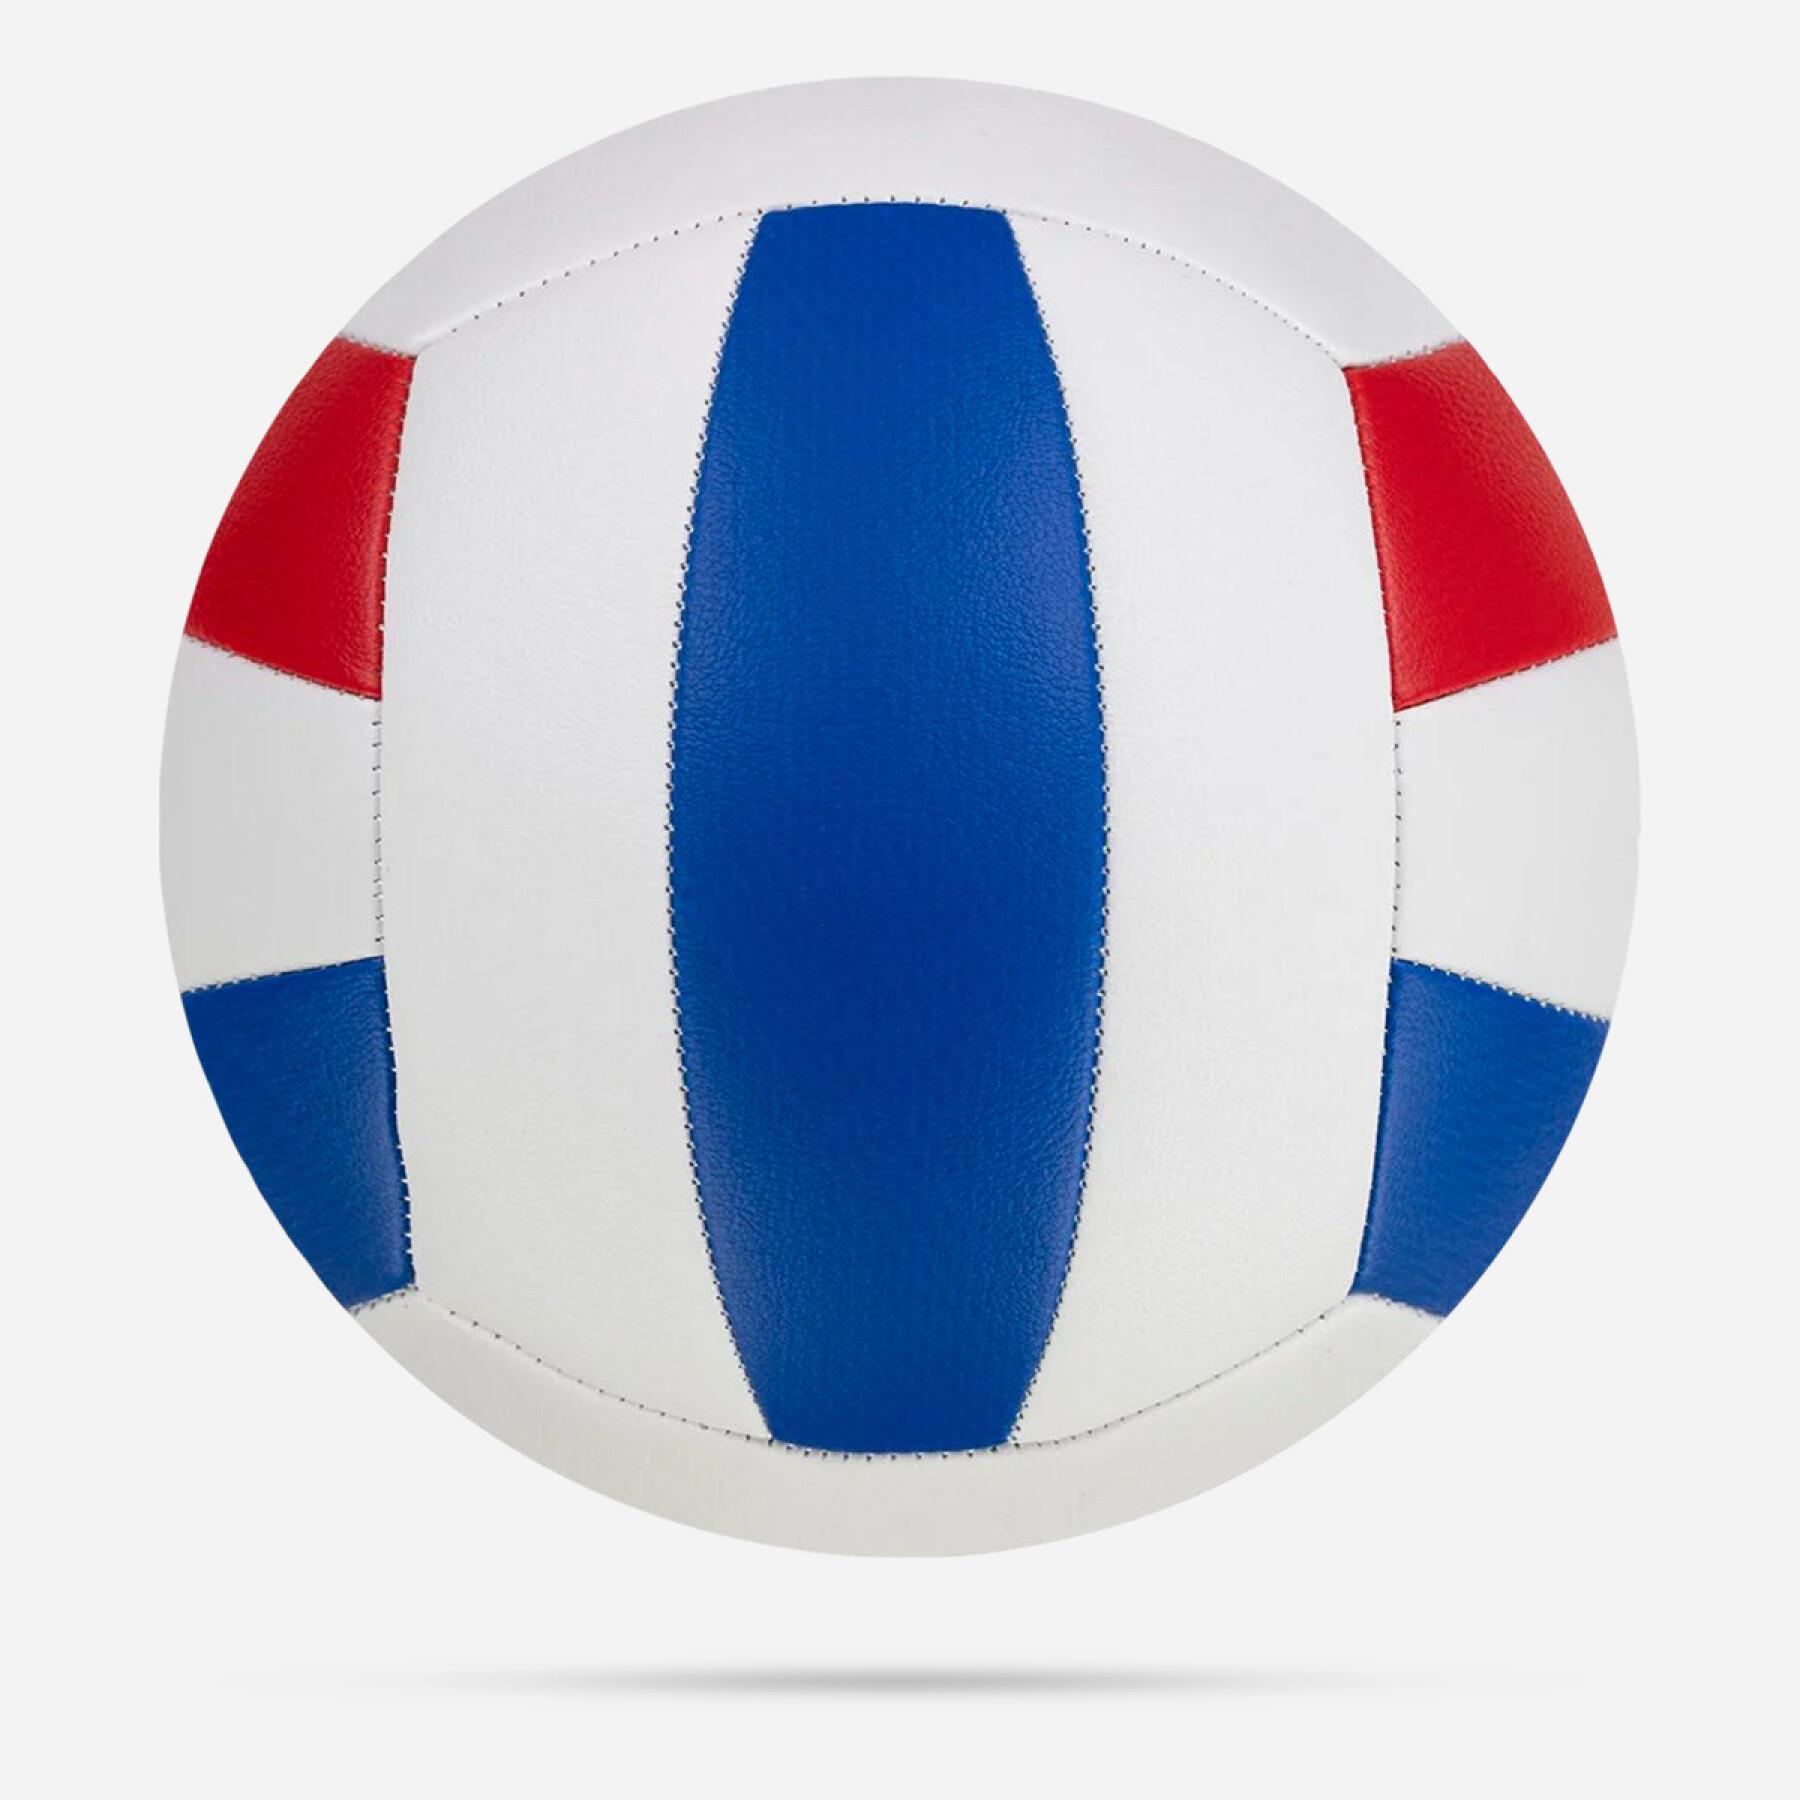 Balón desinflado Nike All Court Volleyball